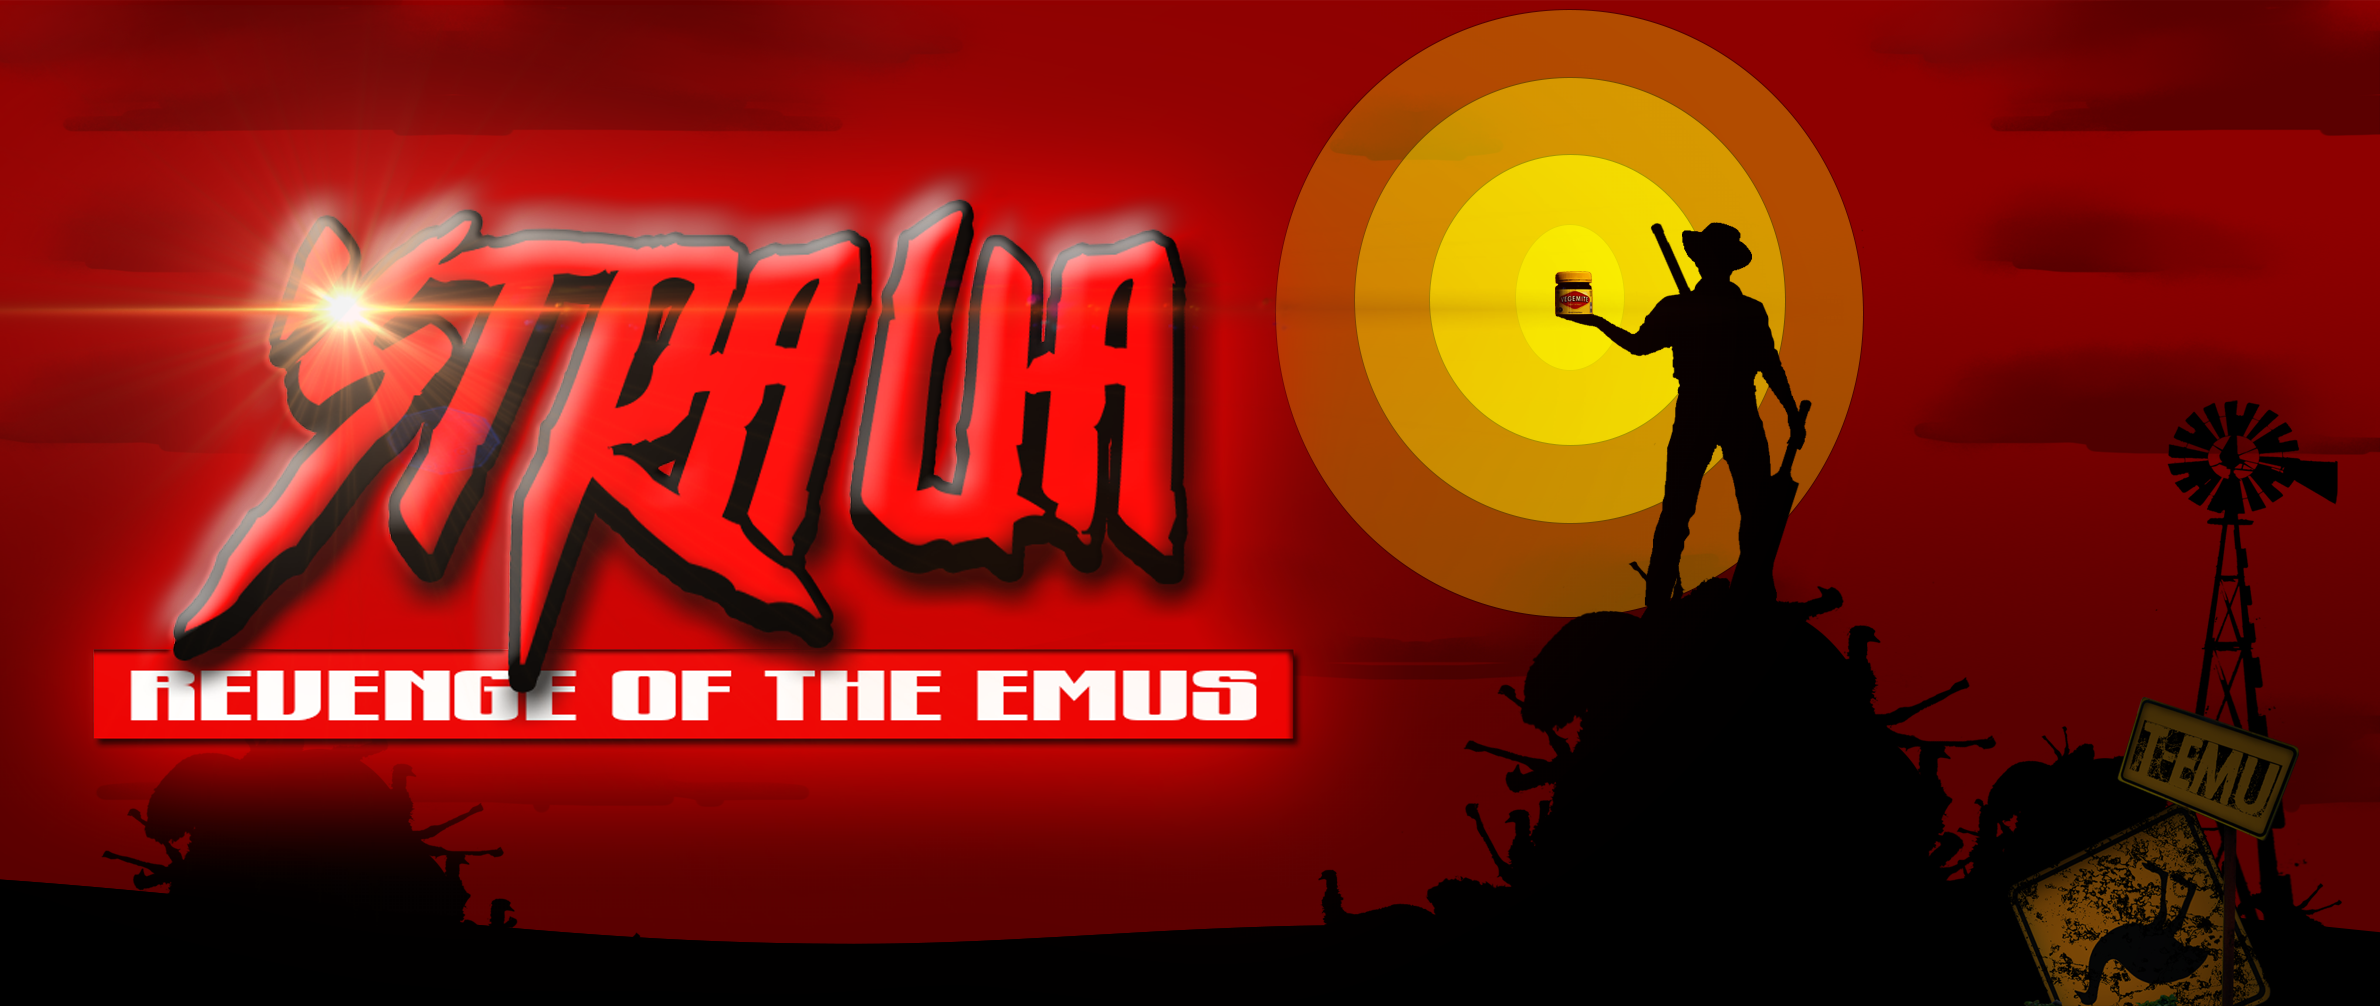 Stralia: Revenge of the Emus